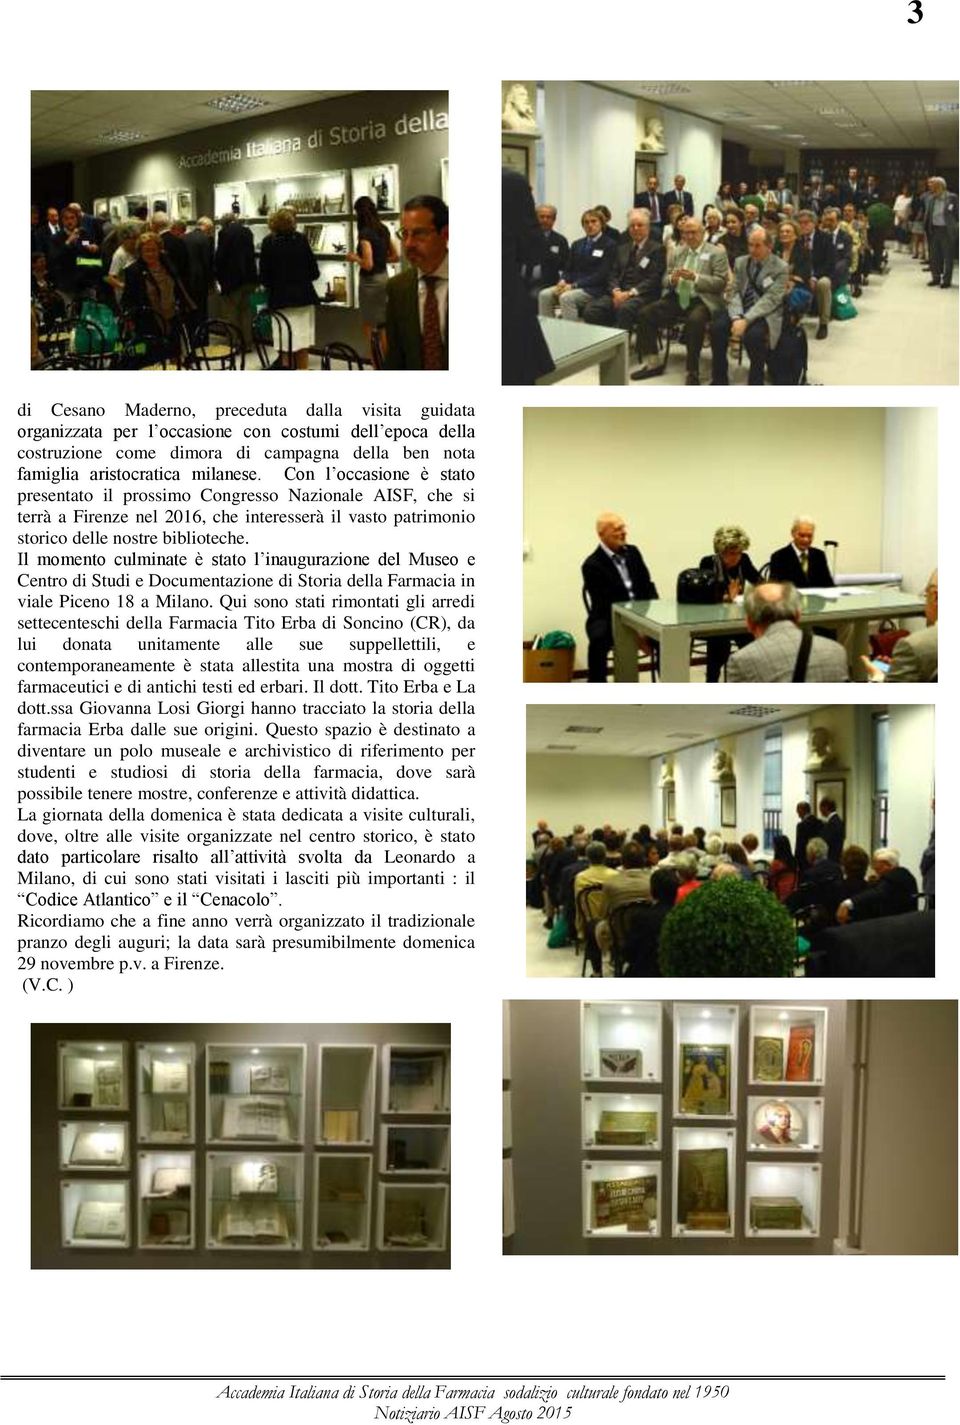 Il momento culminate è stato l inaugurazione del Museo e Centro di Studi e Documentazione di Storia della Farmacia in viale Piceno 18 a Milano.